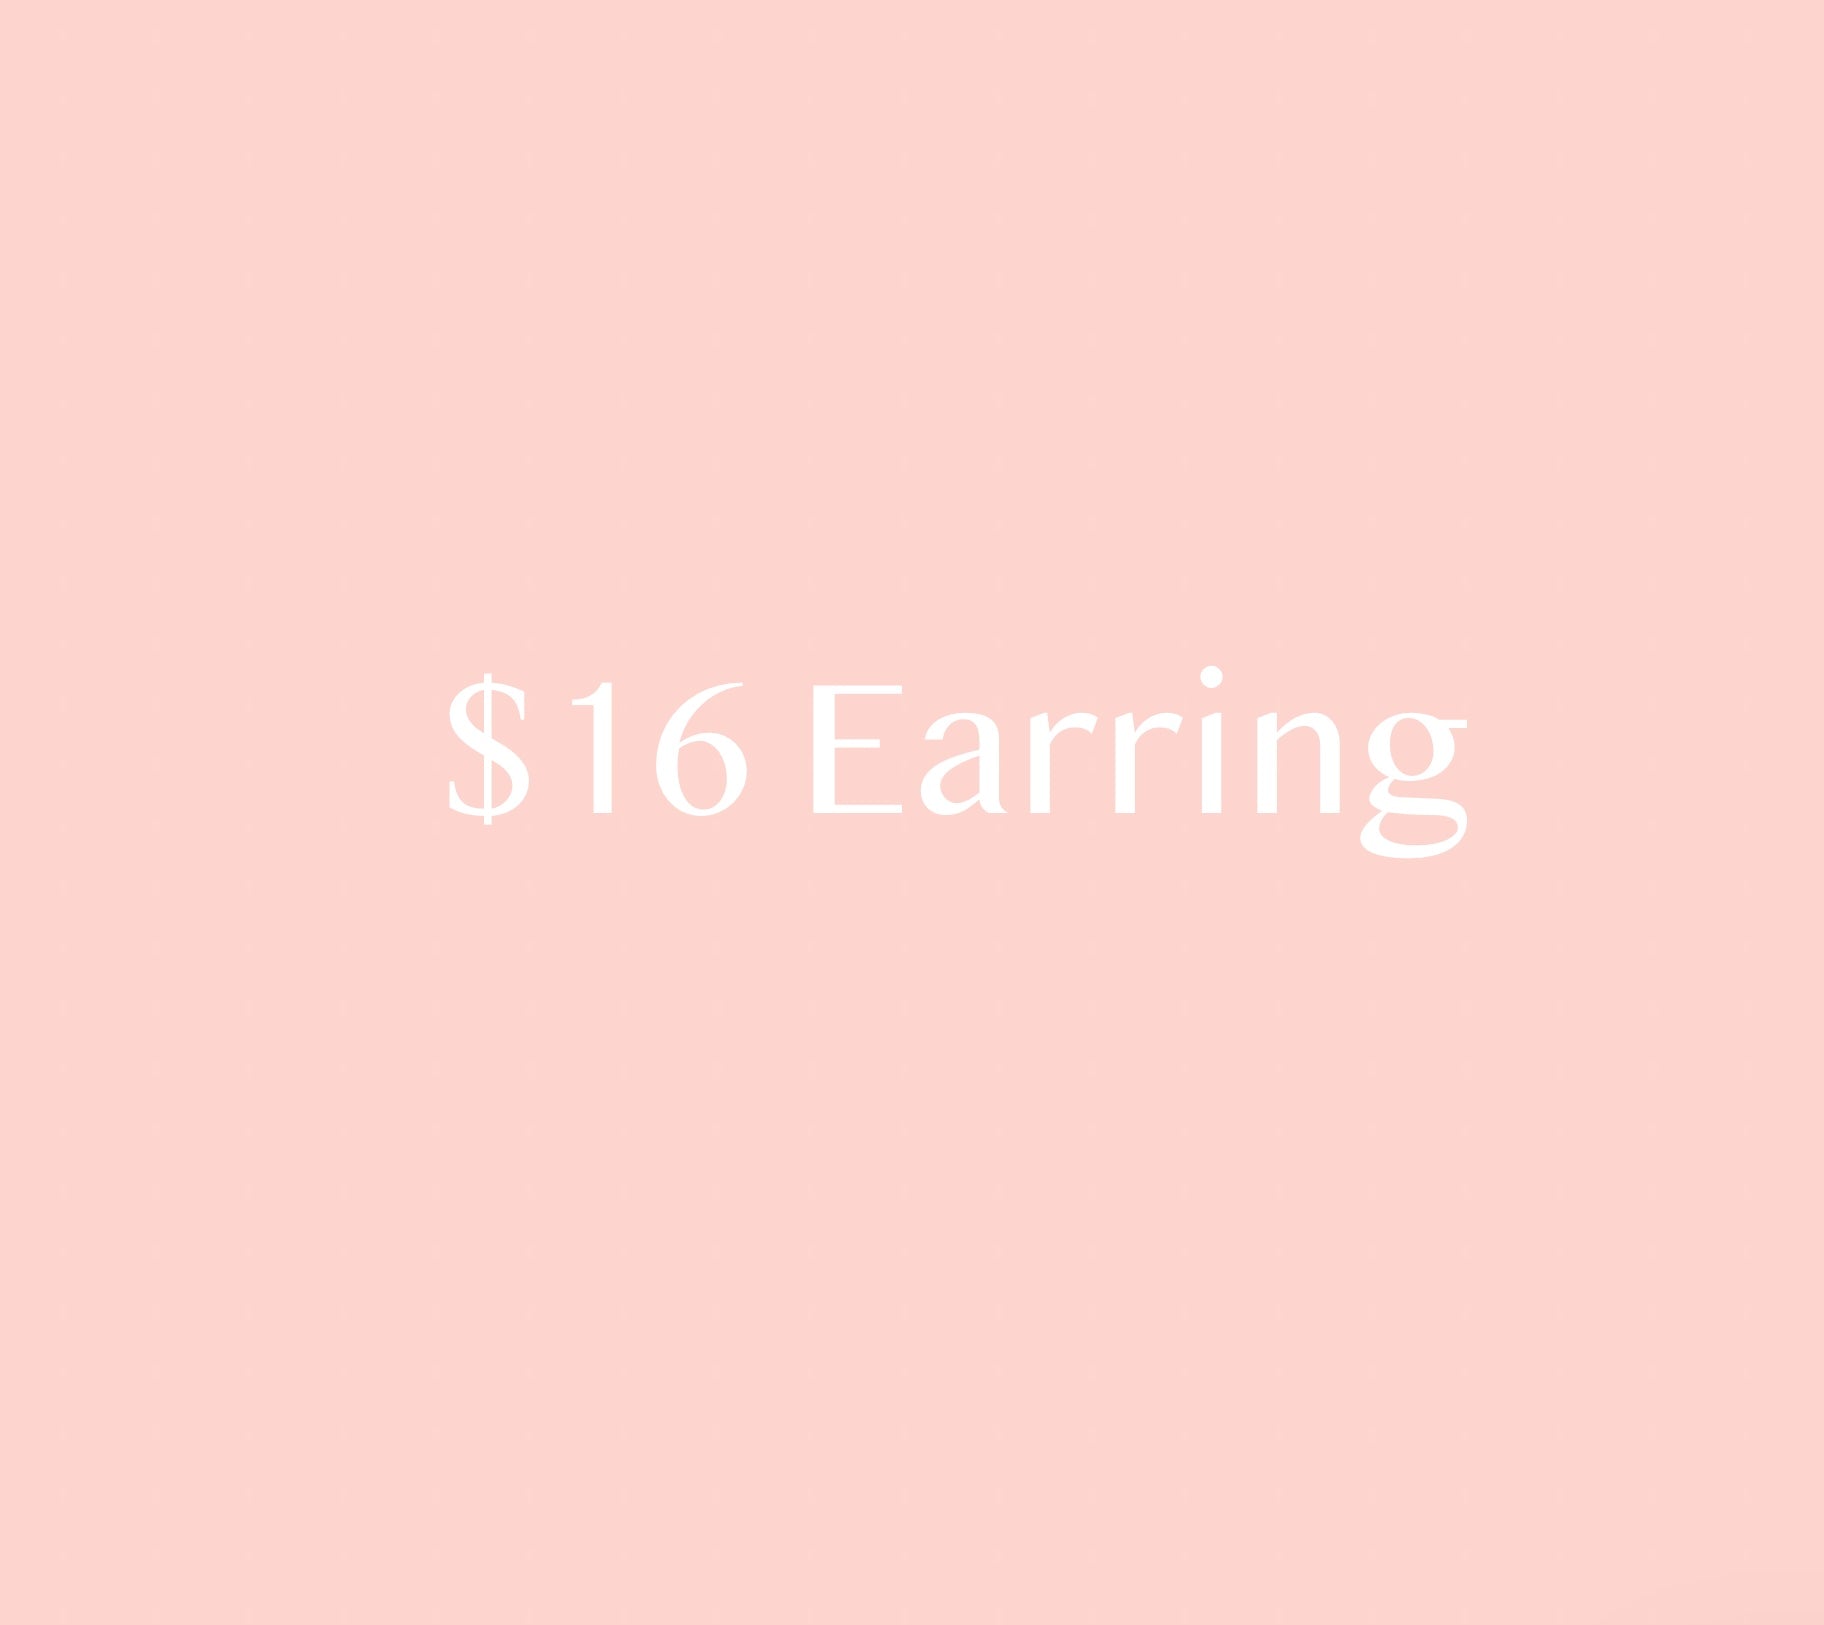 $16 Earring